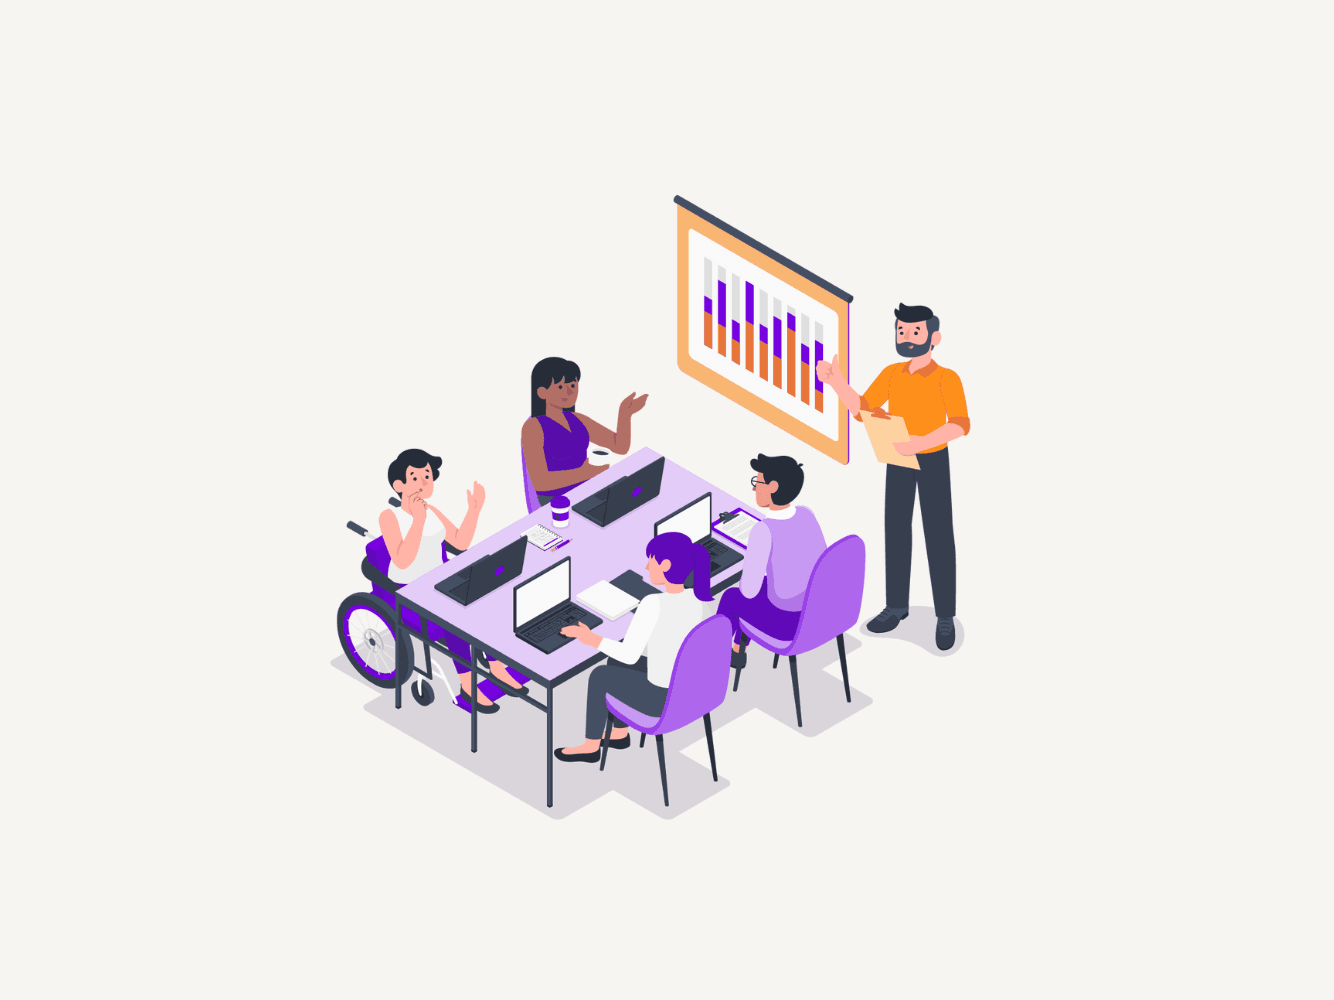 A imagem mostra o desenho de 4 pessoas sentadas em uma mesa de reuniões, cada um com seu computador. Em pé tem um homem de barba com uma prancheta na mão ao lado de uma tela onde está apresentando um gráfico.